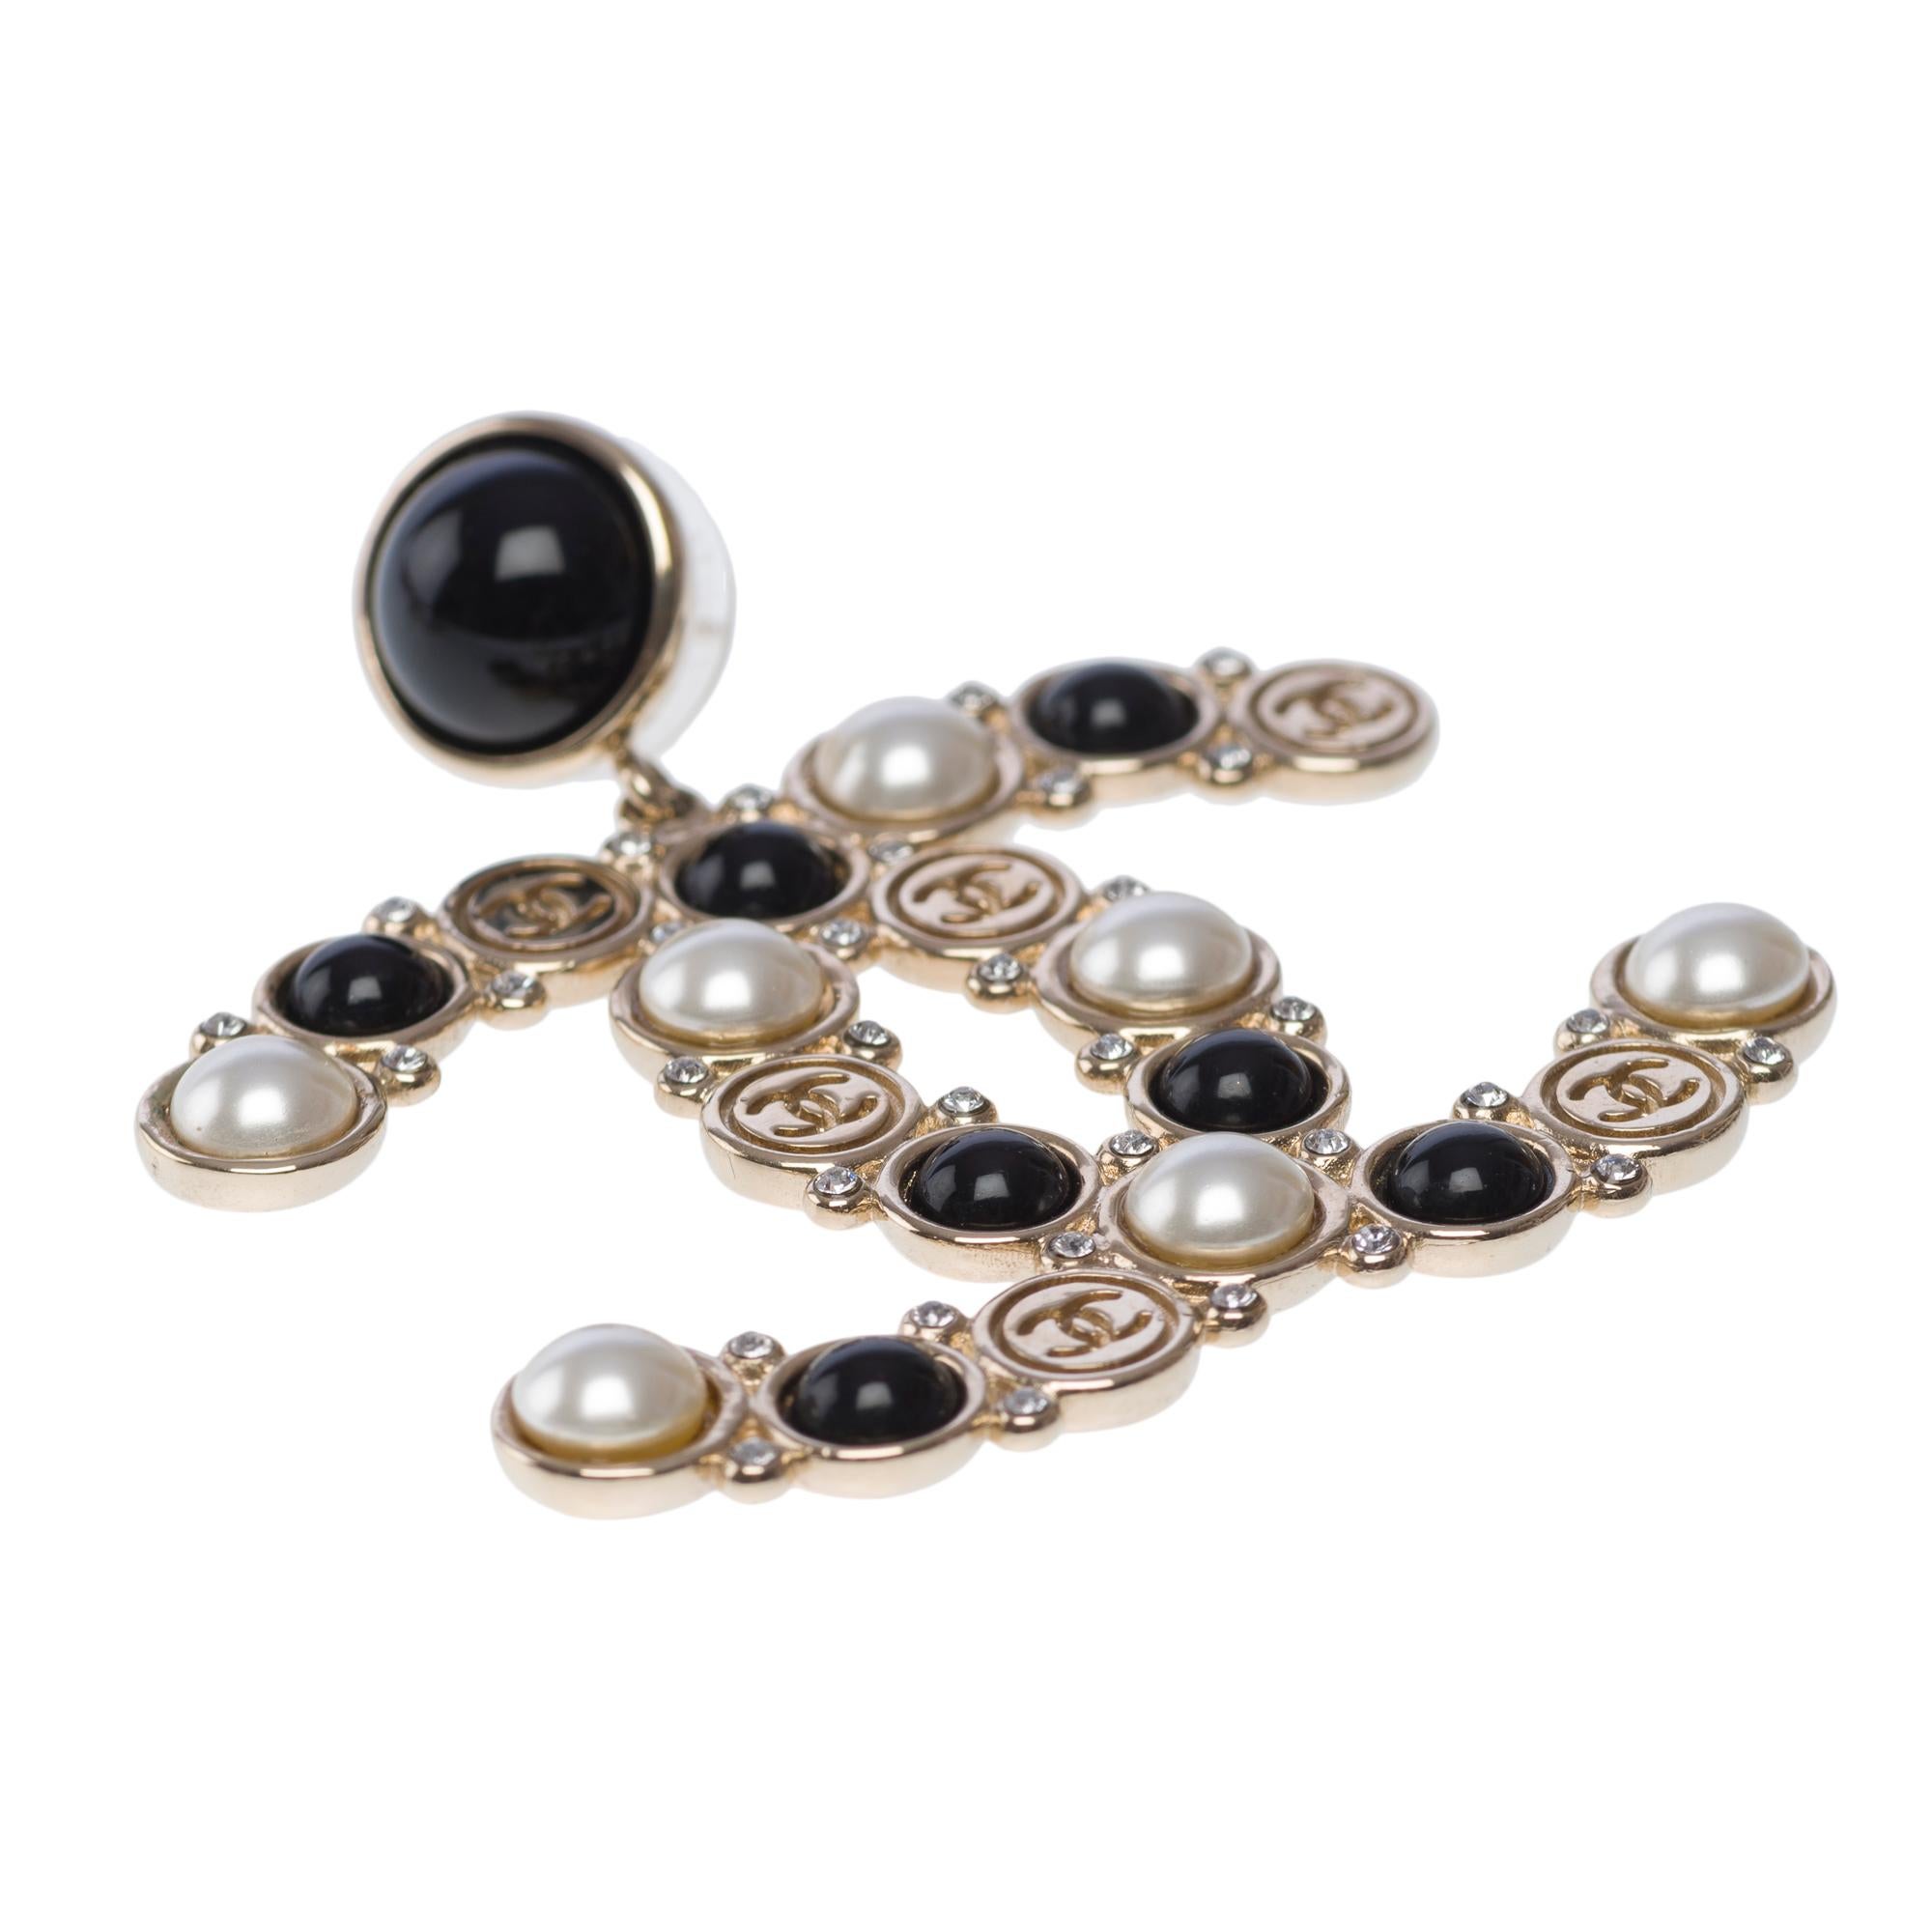 Contemporain Boucles d'oreilles Chanel surmontées de fausses perles, de strass et de résine